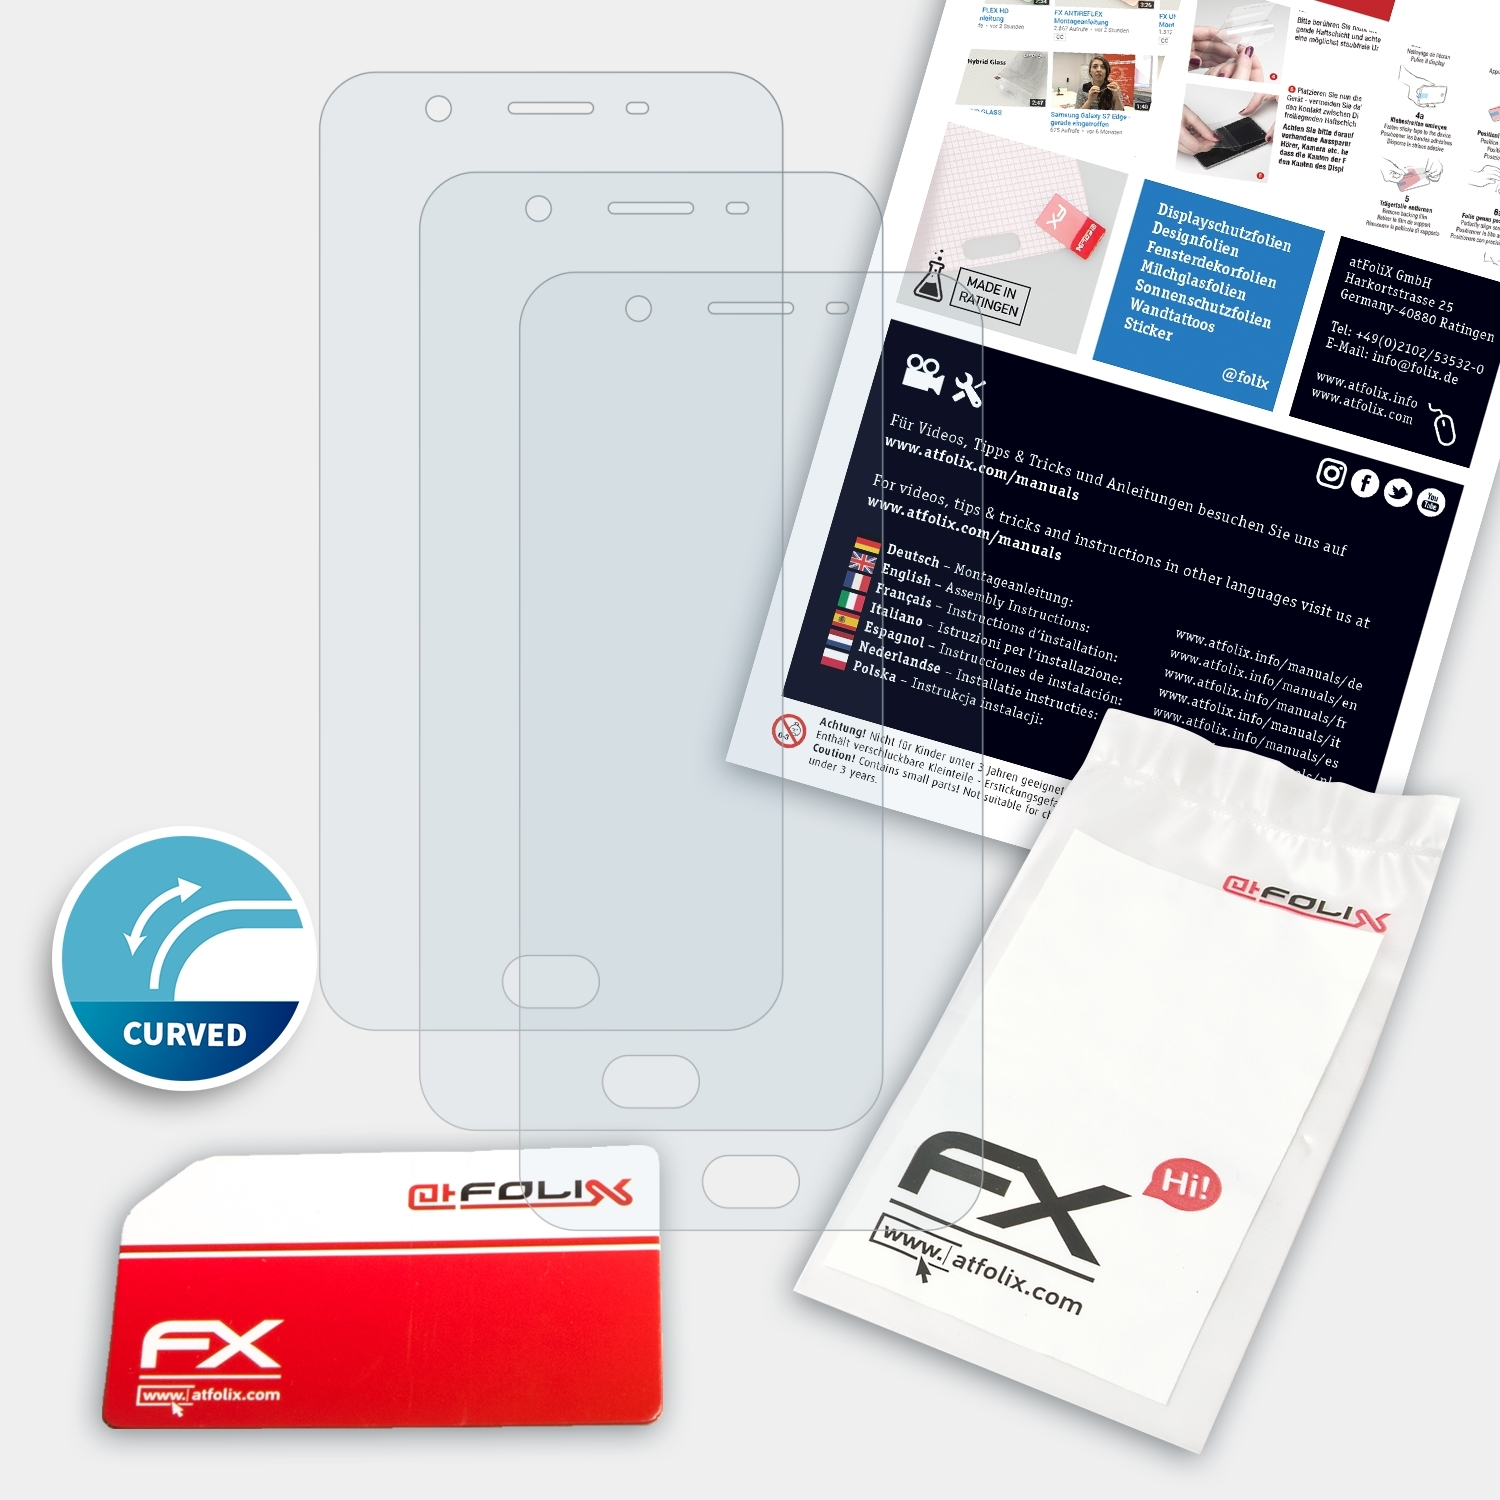 ATFOLIX 3x FX-ActiFleX Displayschutz(für Oppo F1s)